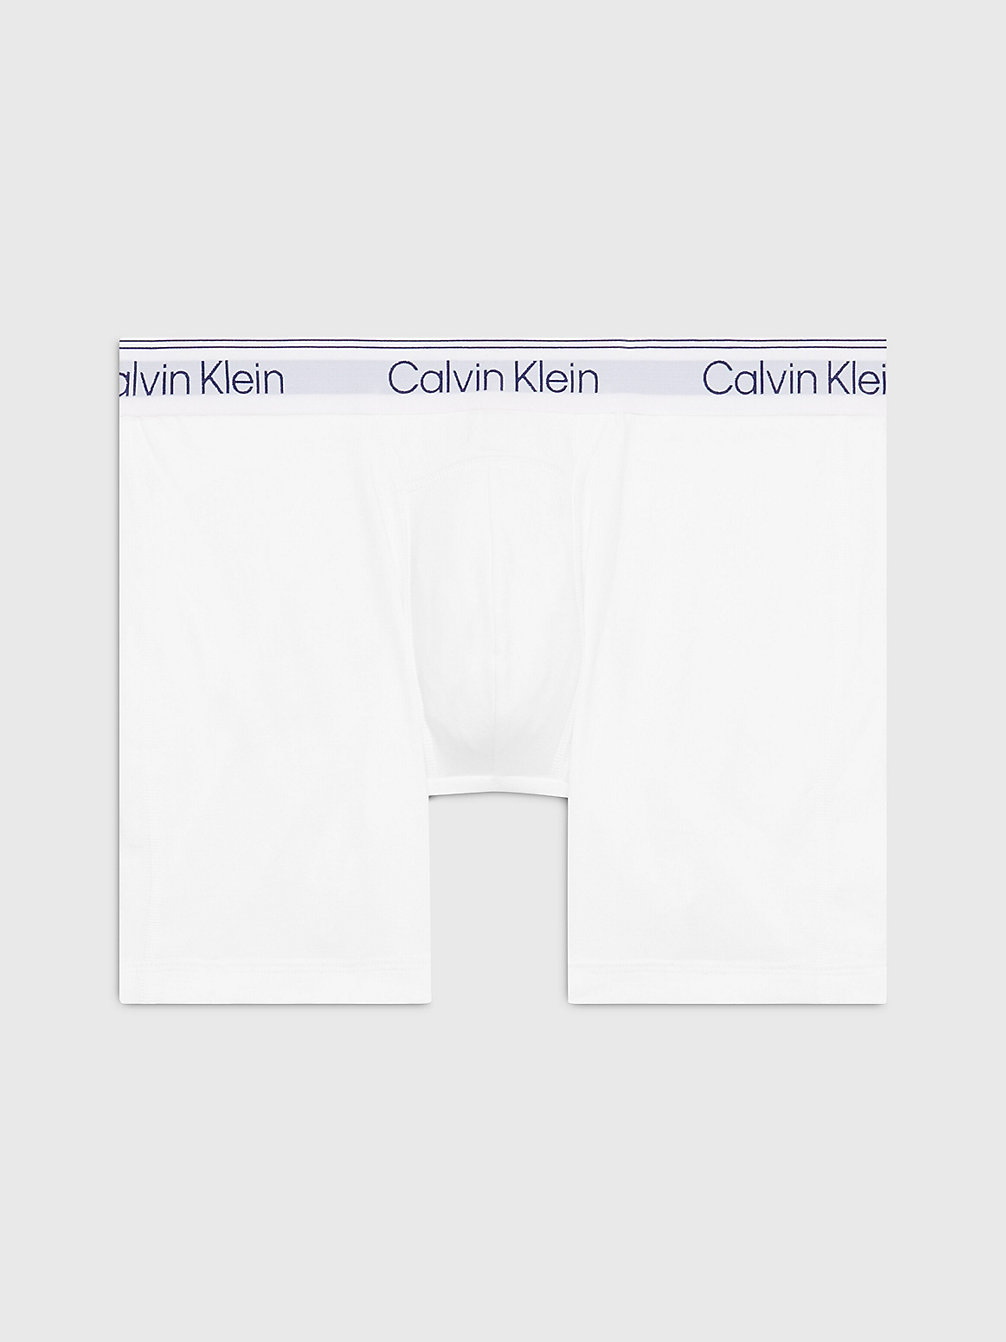 Bóxer Largo - Athletic Cotton > WHITE > undefined men > Calvin Klein